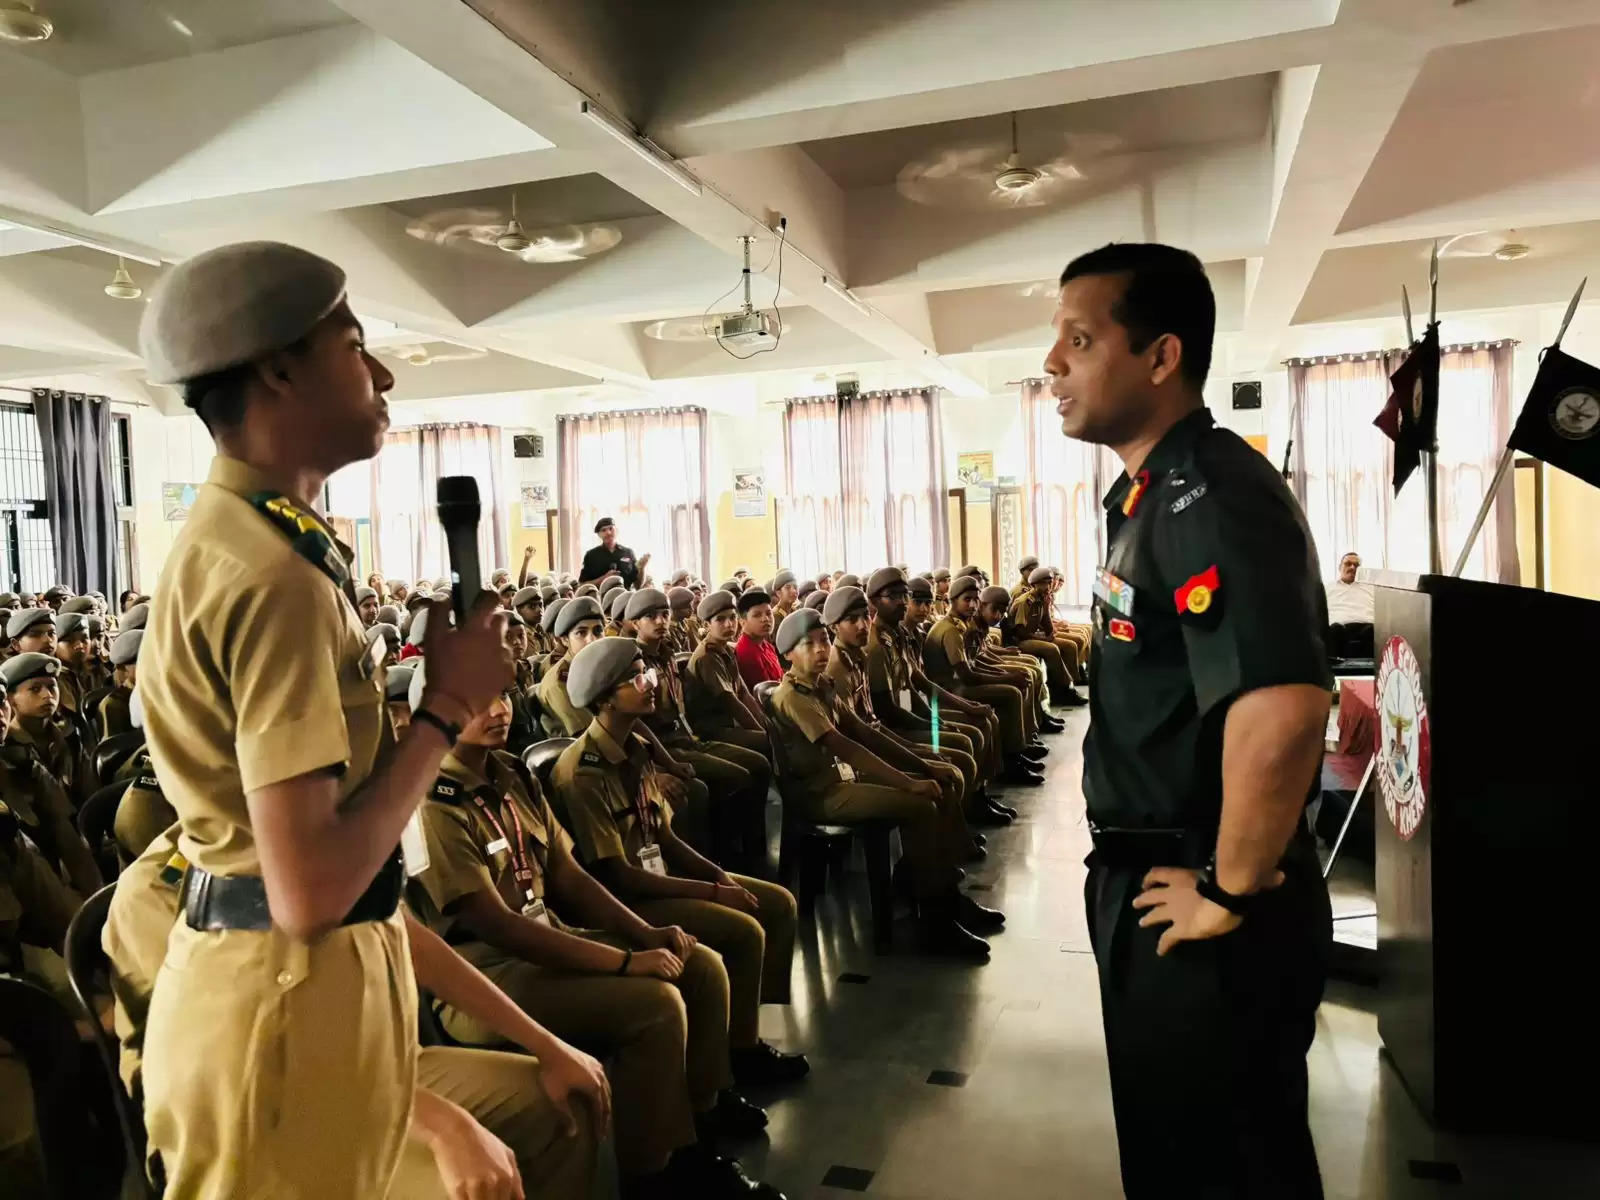   सैनिक स्कूल खारा खेड़ी में बेहतरीन सुविधाएं : कर्नल एमेया सावंत